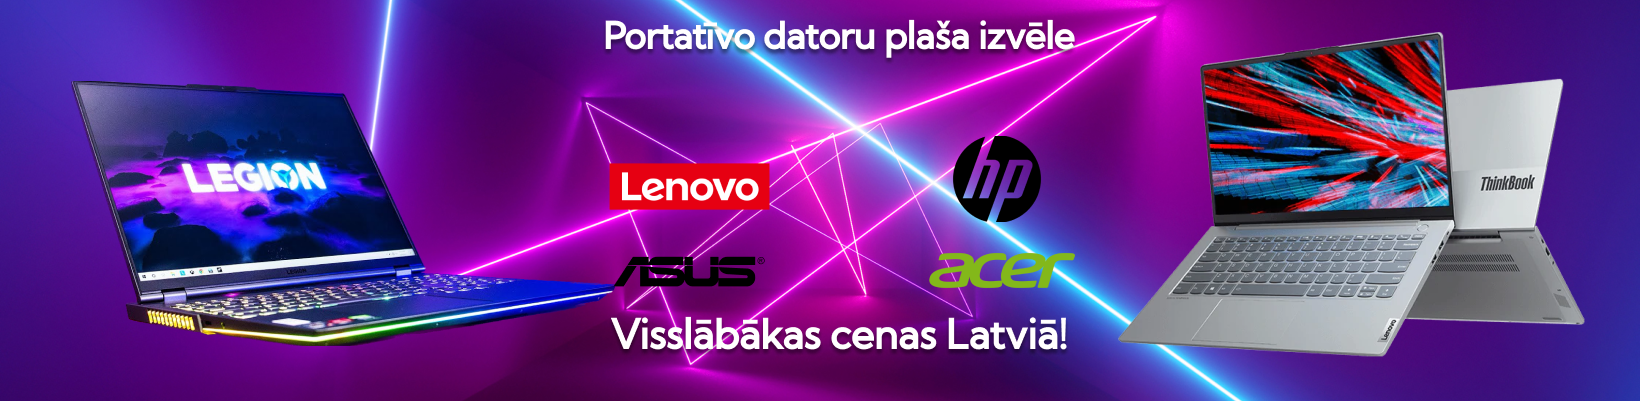 Portatīvo datoru plaša izvēle Lenovo, HP, Asus, Dell. Vislābākas cenas Latviā!